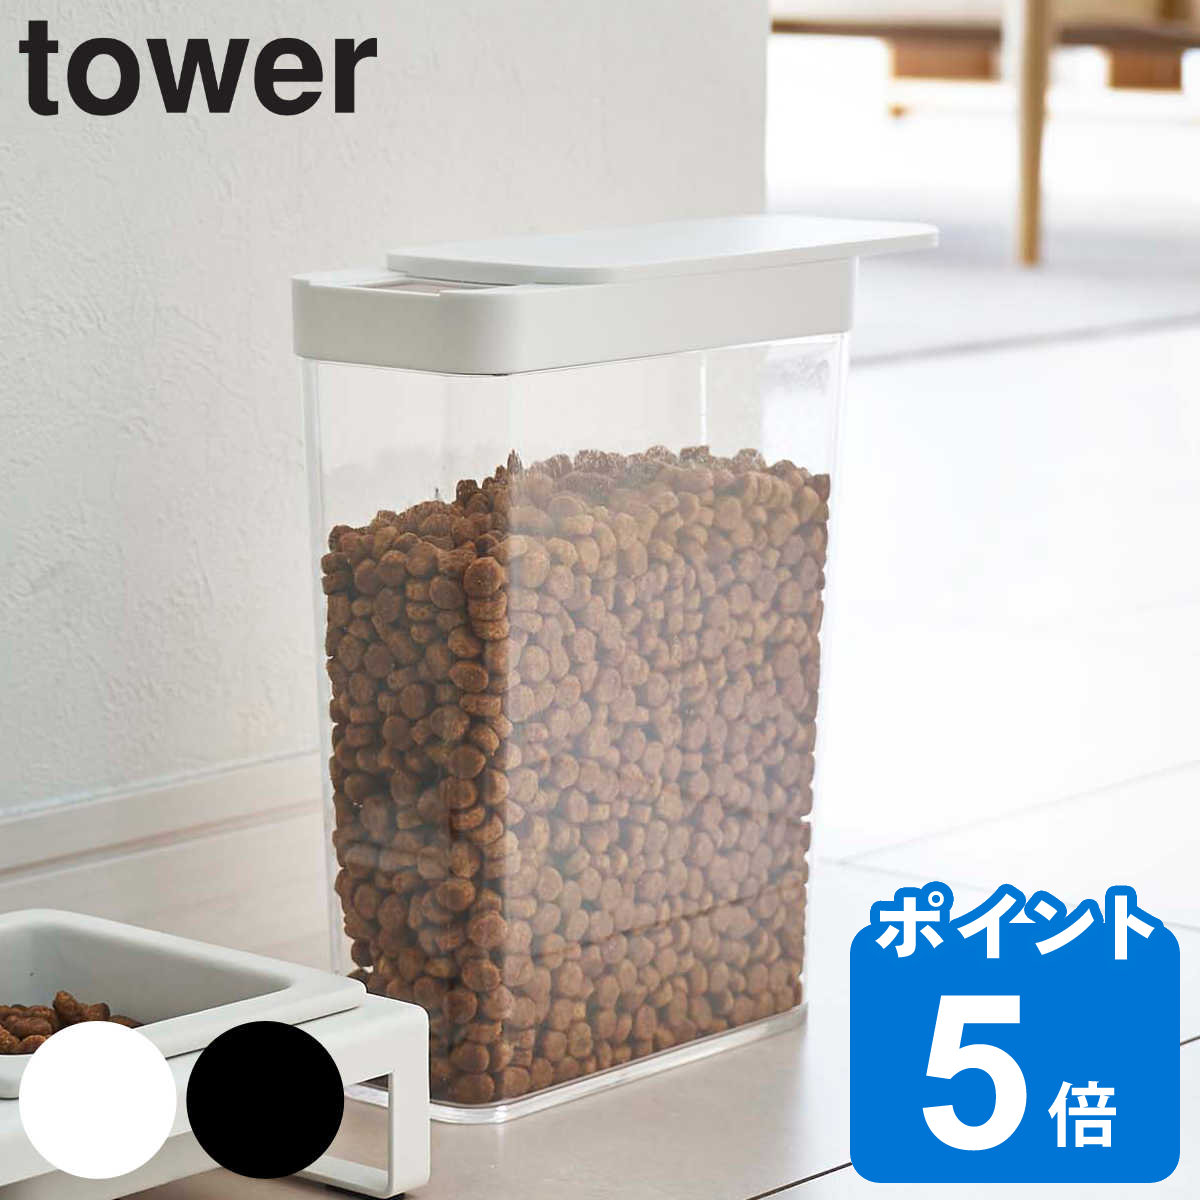 山崎実業 tower ペットフードストッカー タワー 1.2kg ペットフード ストッカー ペット フード 保存 容器 スリム スライド式 コンパクト ドッグフード キャットフード エサ入れ ケース ペット…